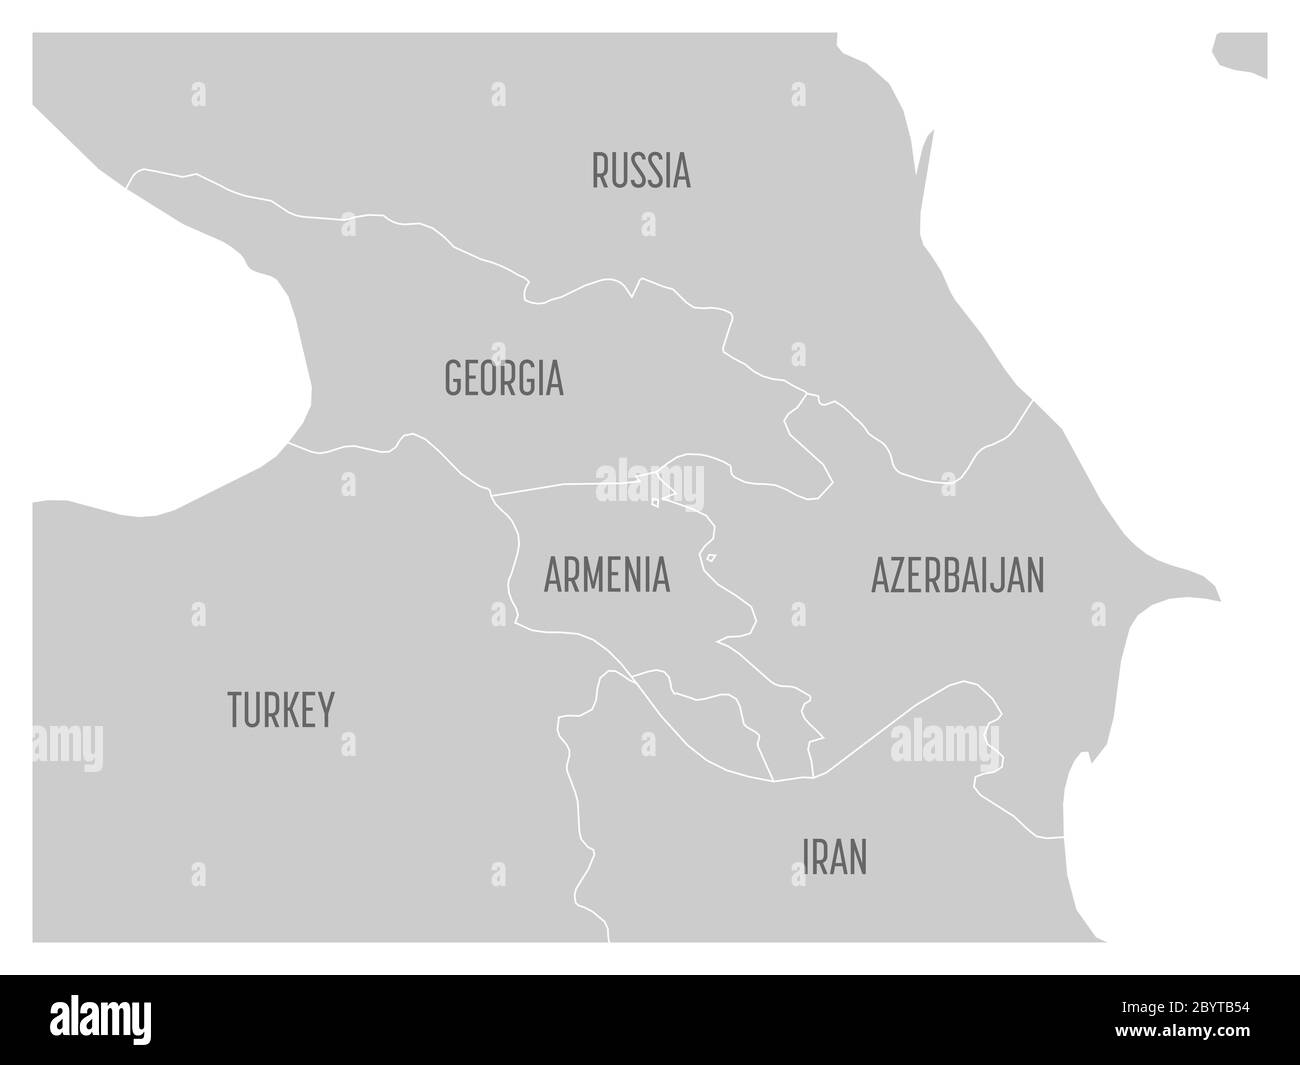 Karte der kaukasischen Region mit Staaten von Georgien, Armenien, Aserbaidschan, Russland Türkei und Iran. Flache graue Karte mit weißen Ländergrenzen. Stock Vektor